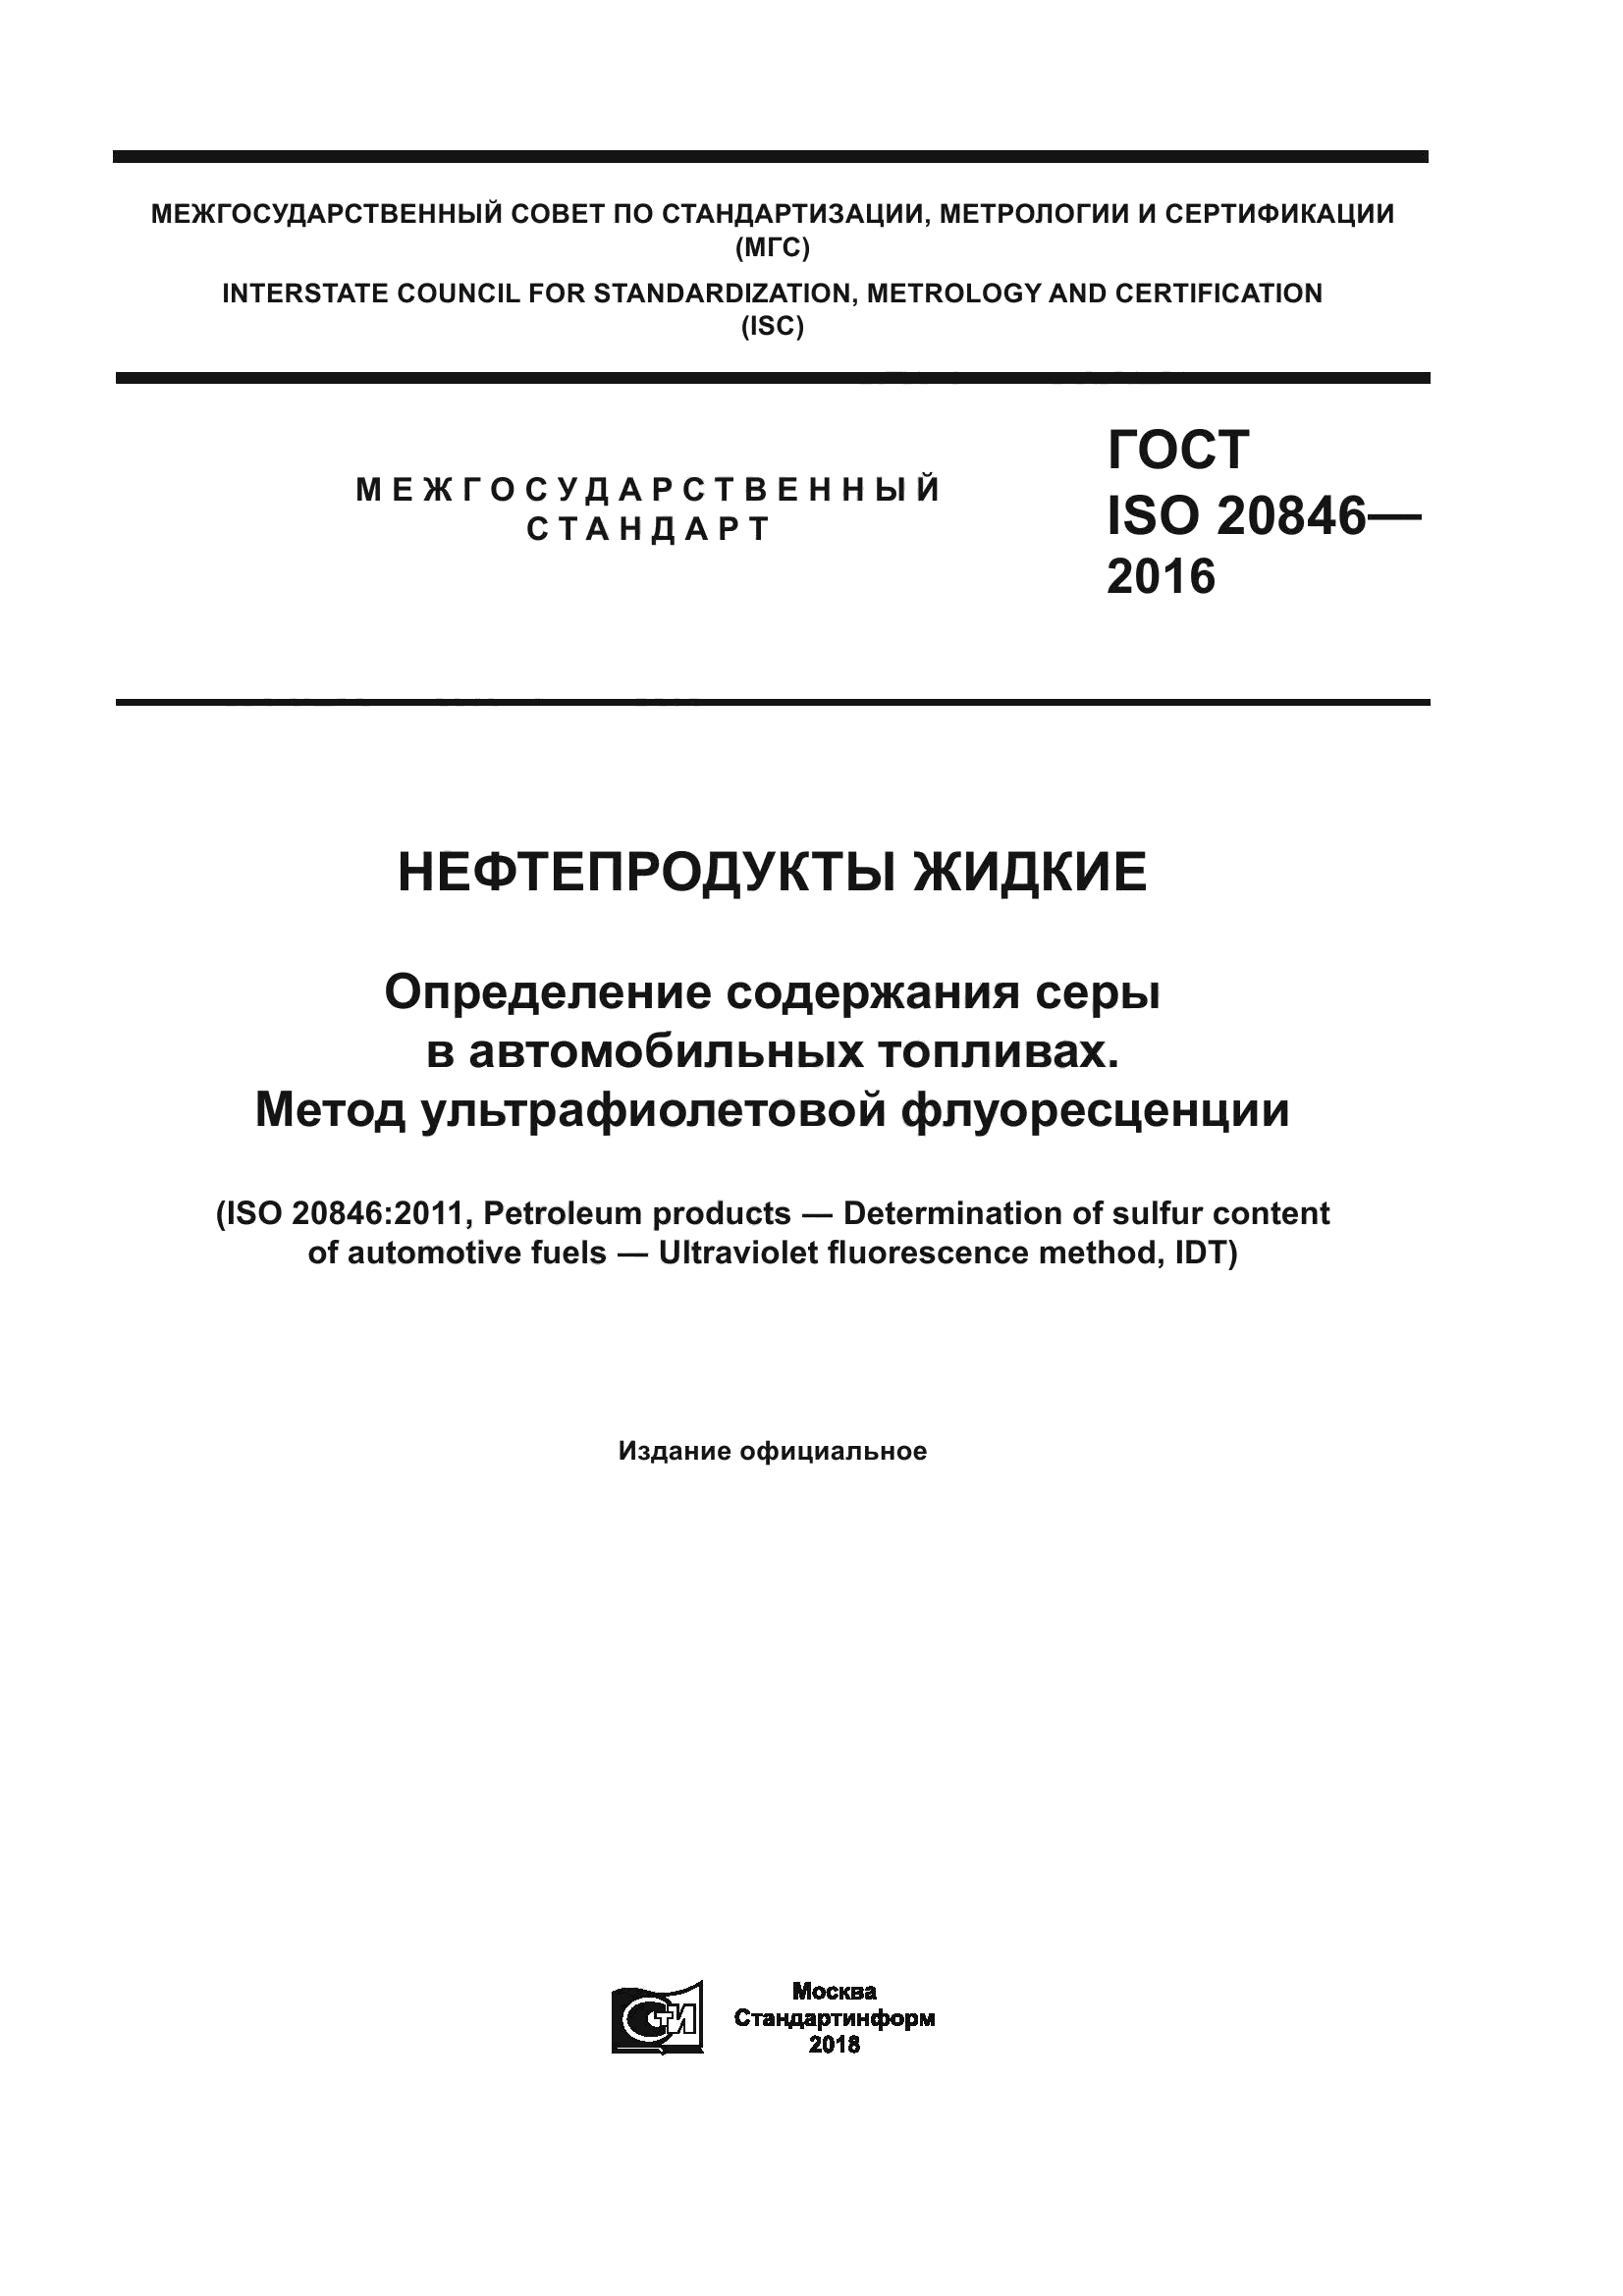 ГОСТ ISO 20846-2016